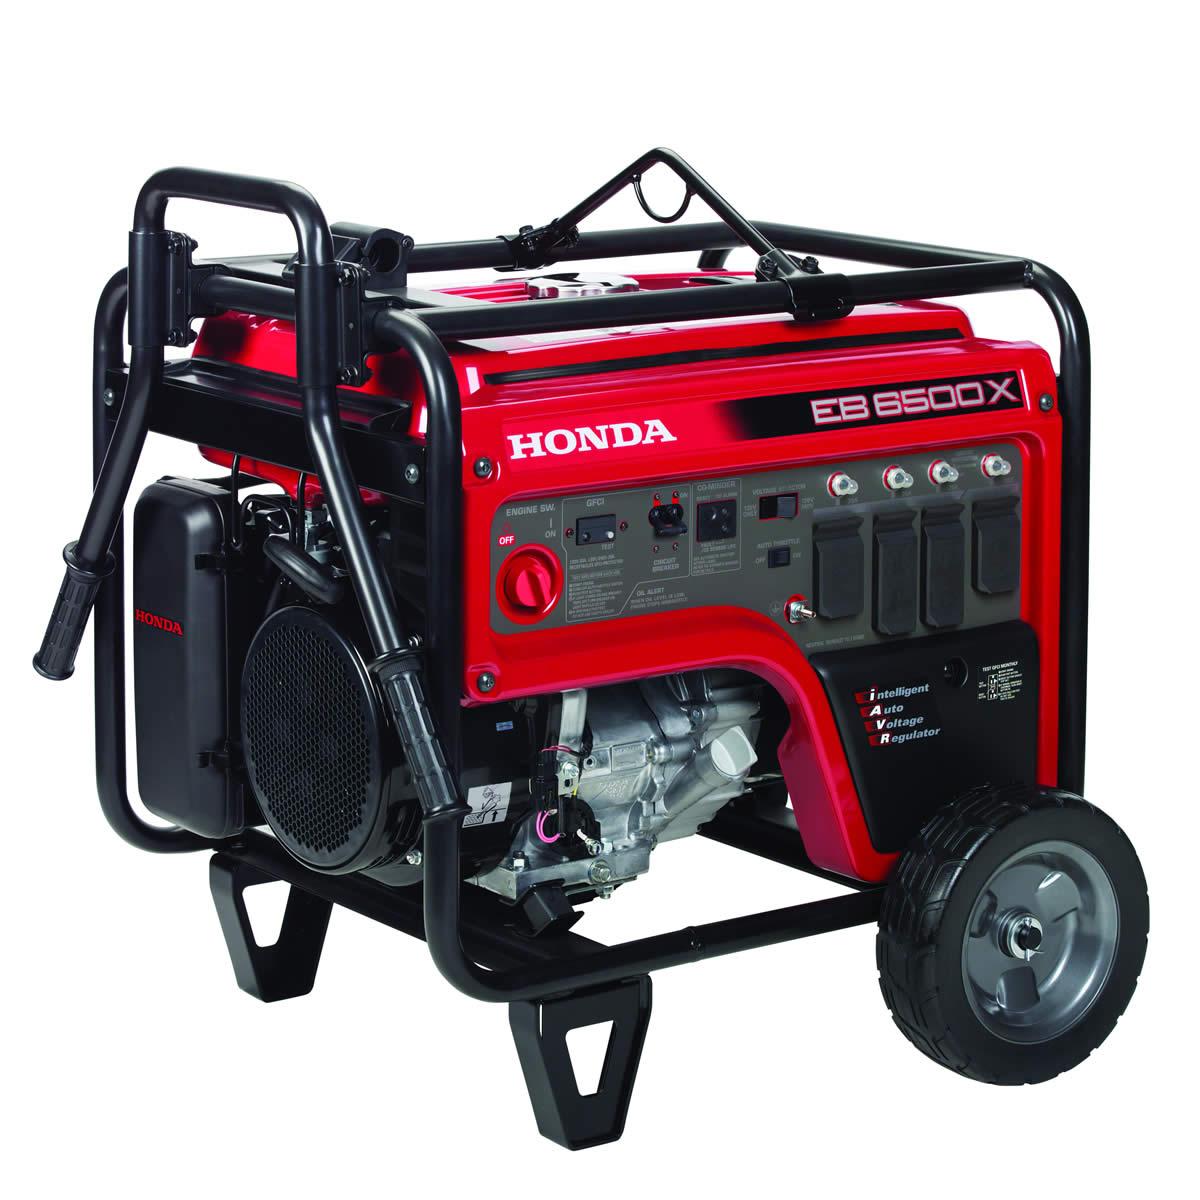 Honda 6500W Generator - EB6500